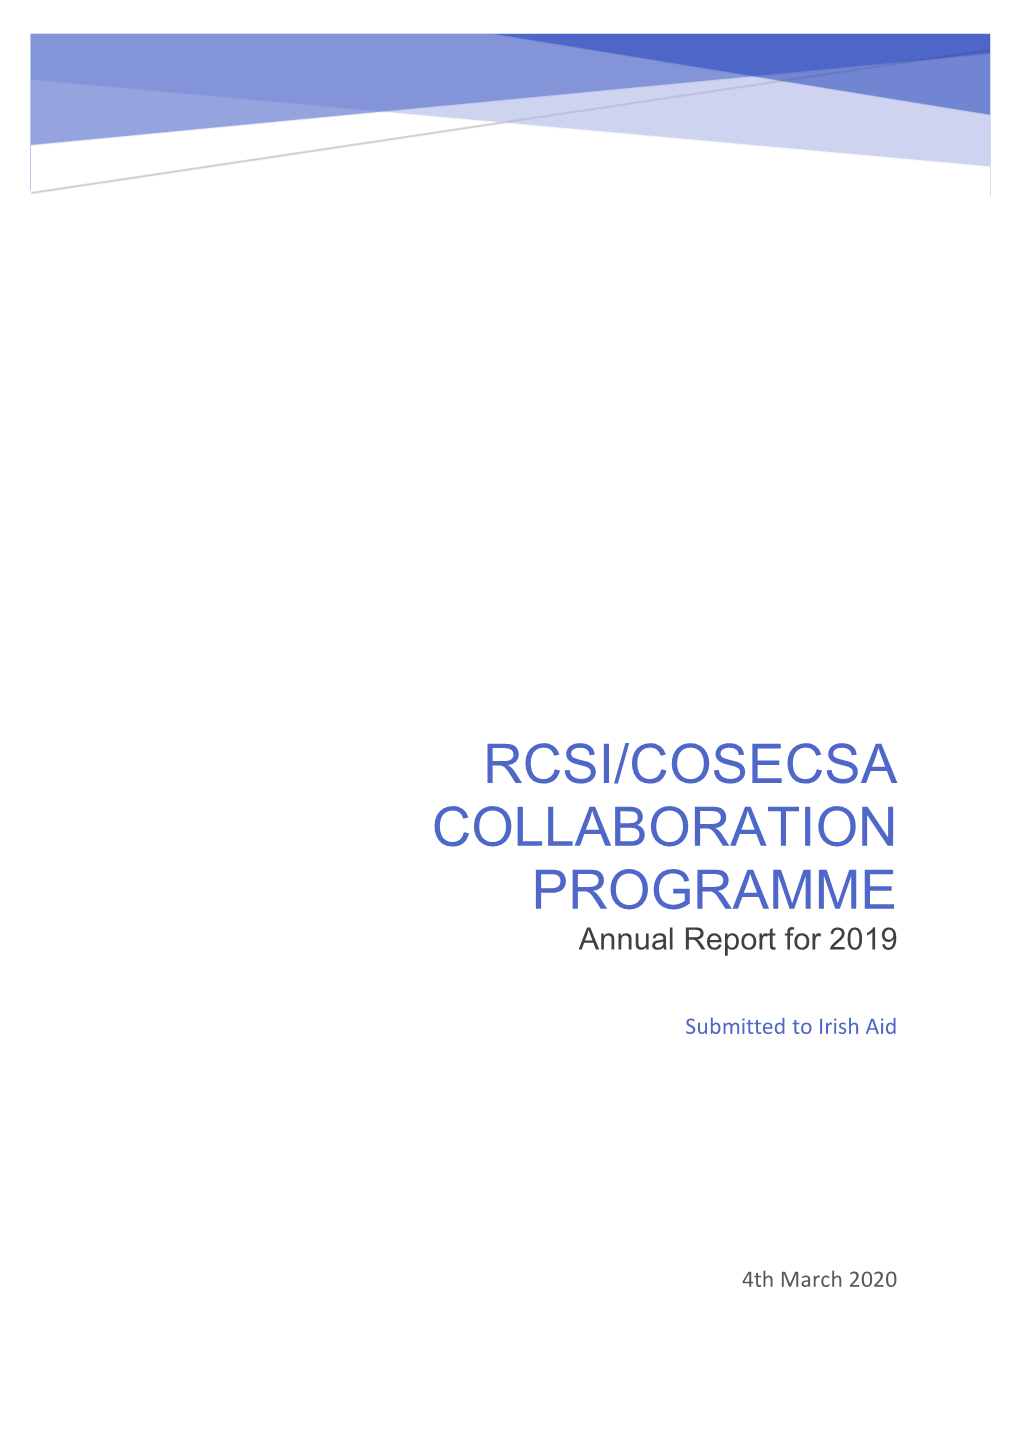 RCSI/COSECSA Collaboration Programme Annual Report 2019